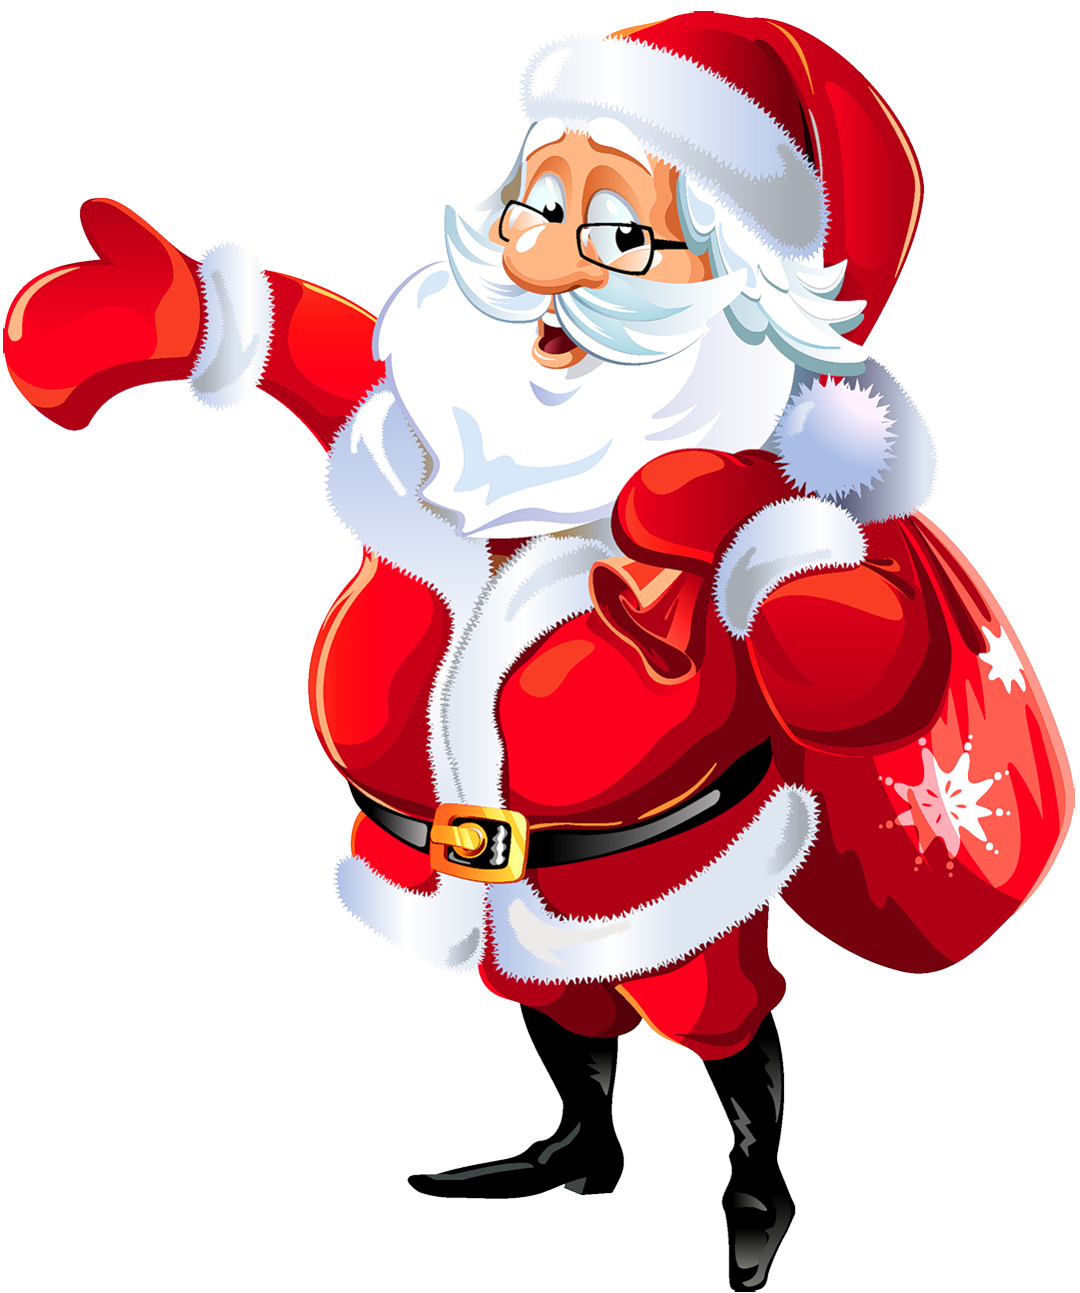 Truy cập ngay vào thư viện hình ảnh Santa Claus Images PNG để tìm thấy nguồn cảm hứng âm nhạc tuyệt vời cho đêm giáng sinh tuyệt đẹp được đang chờ bạn khám phá. Tựa như một bài hát giáng sinh đầy cảm xúc, những hình ảnh này sẽ khiến bạn phấn khích và muốn trải nghiệm ngay lập tức!